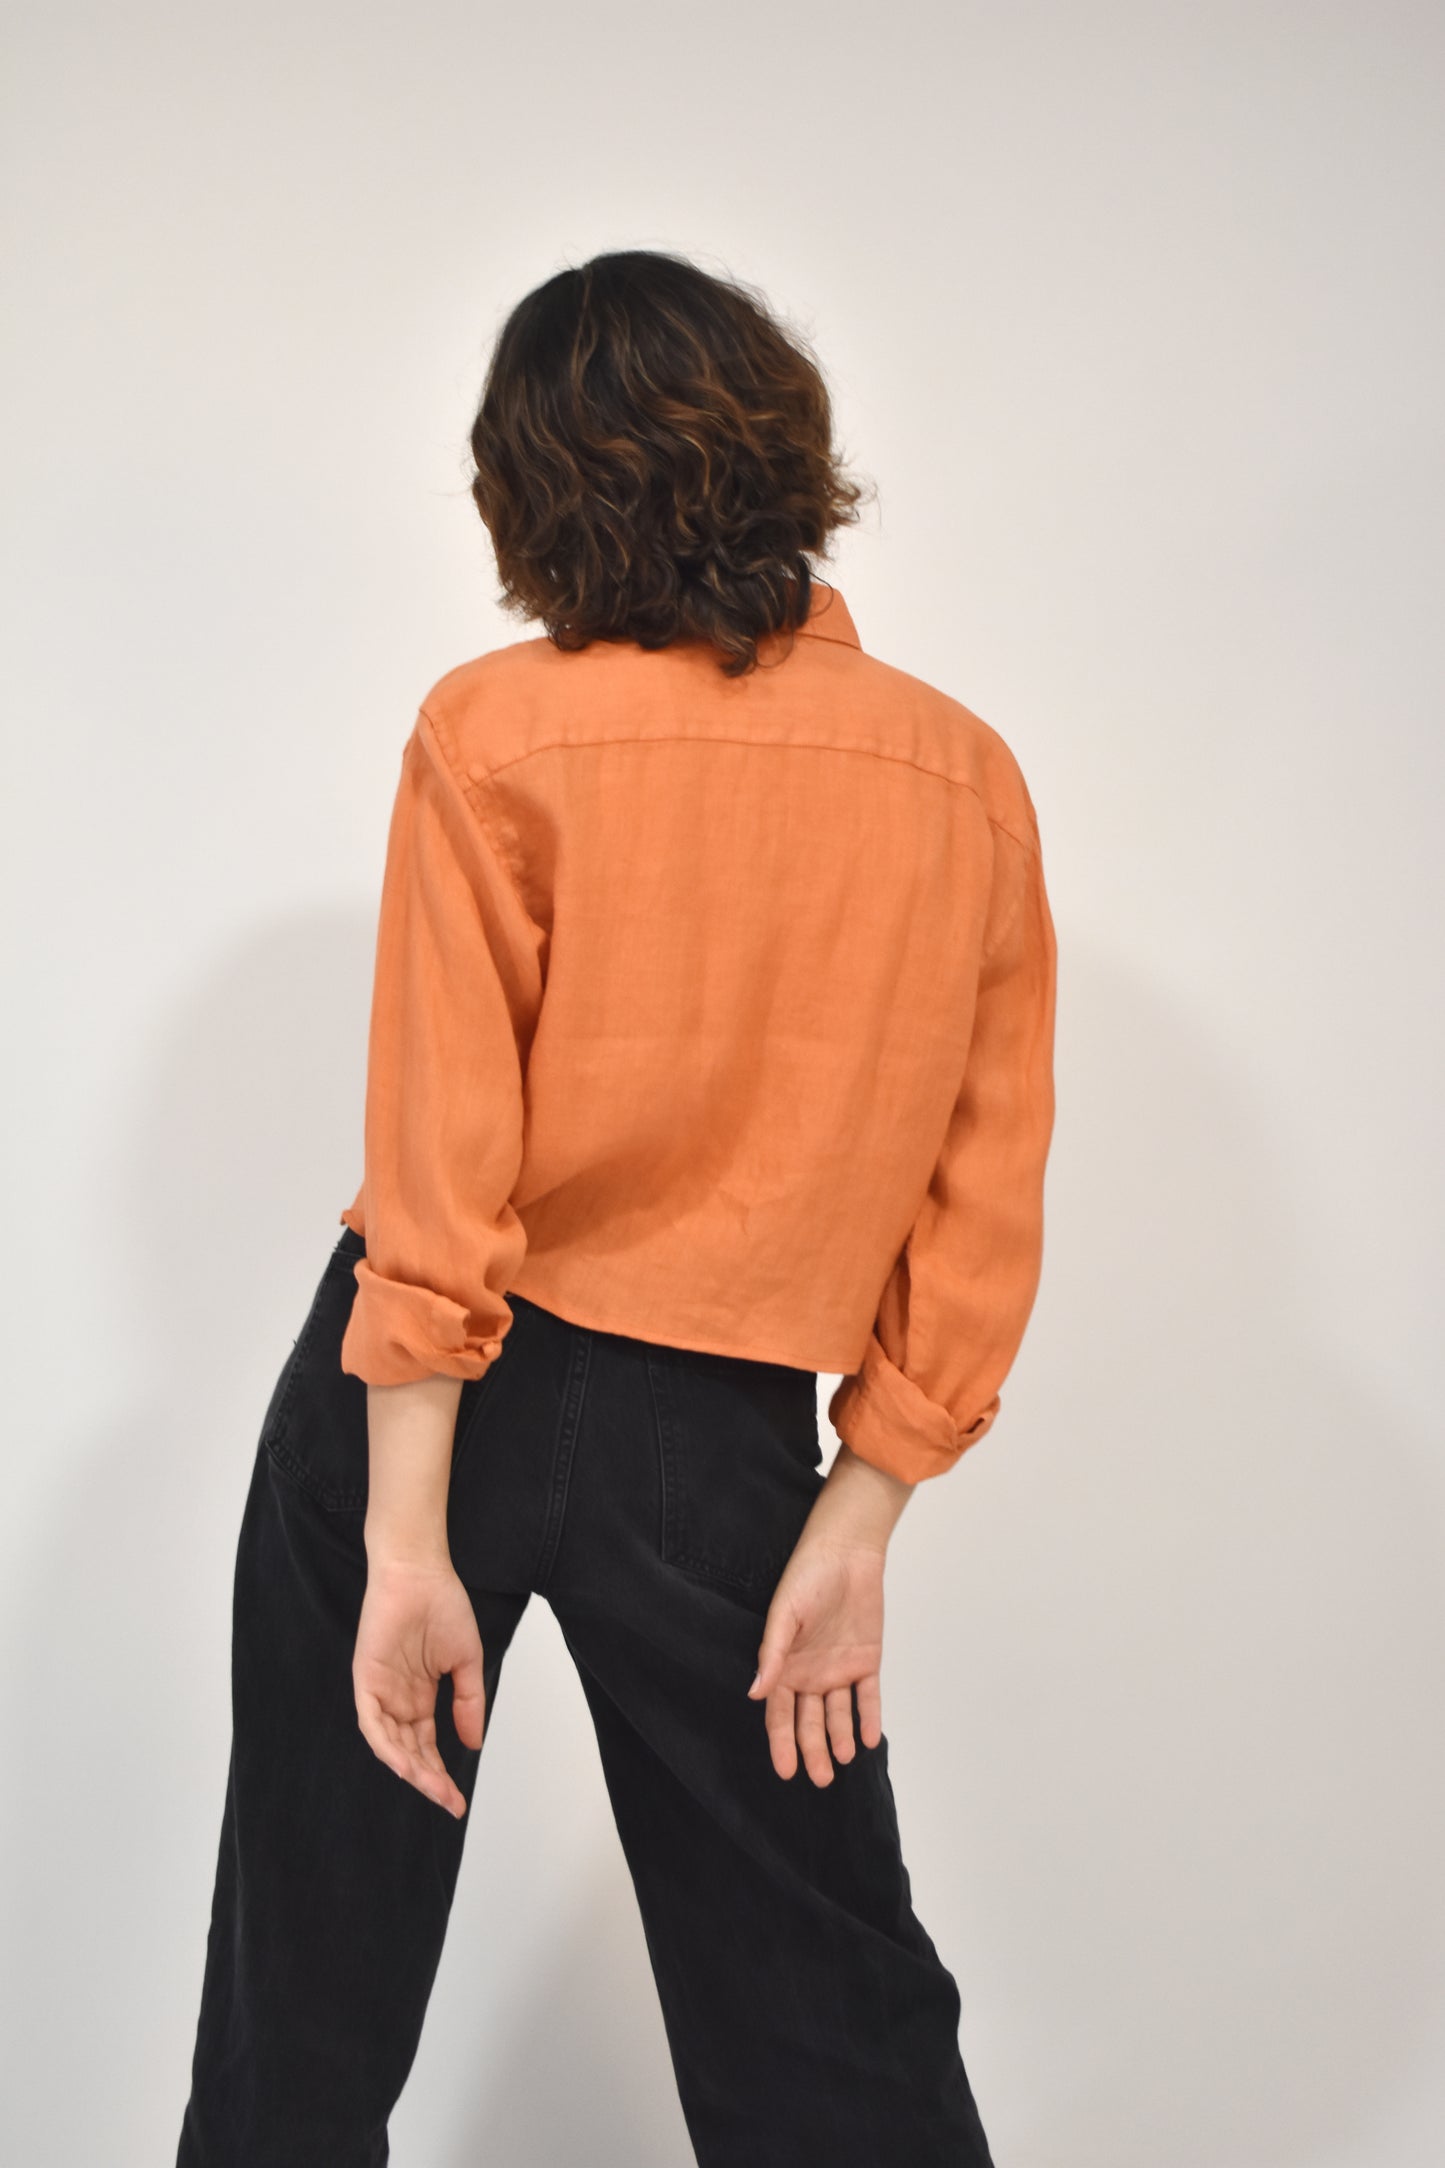 Camisa Orange